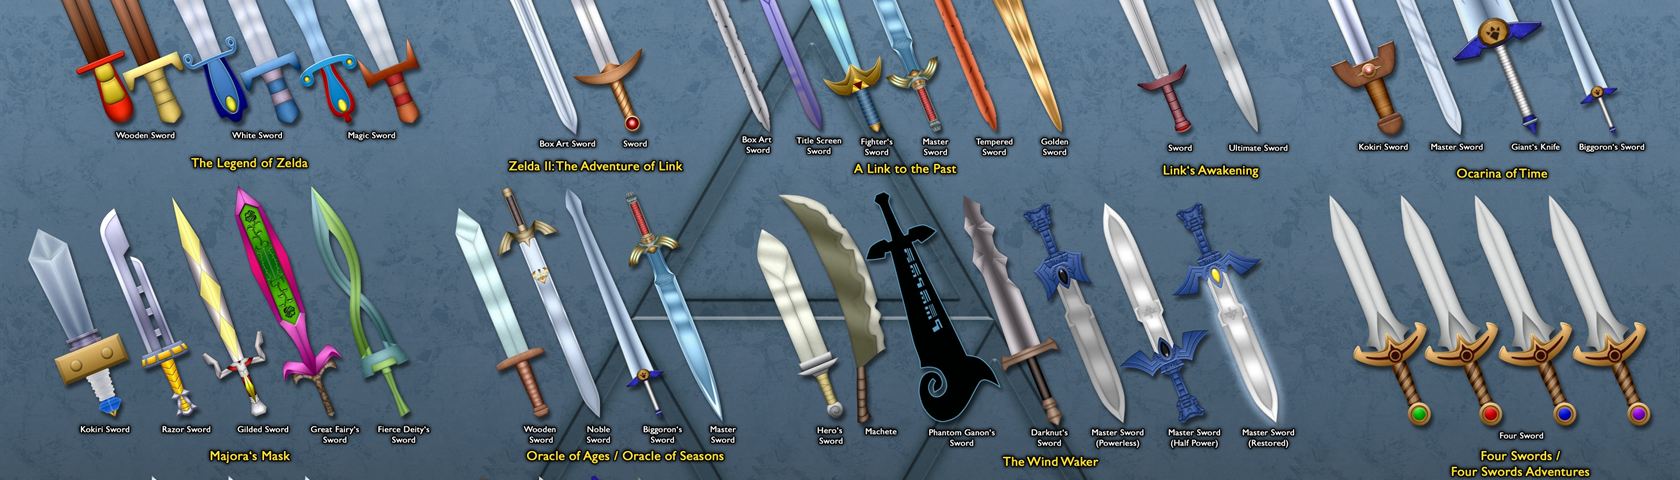 Evolution of Link's Sword